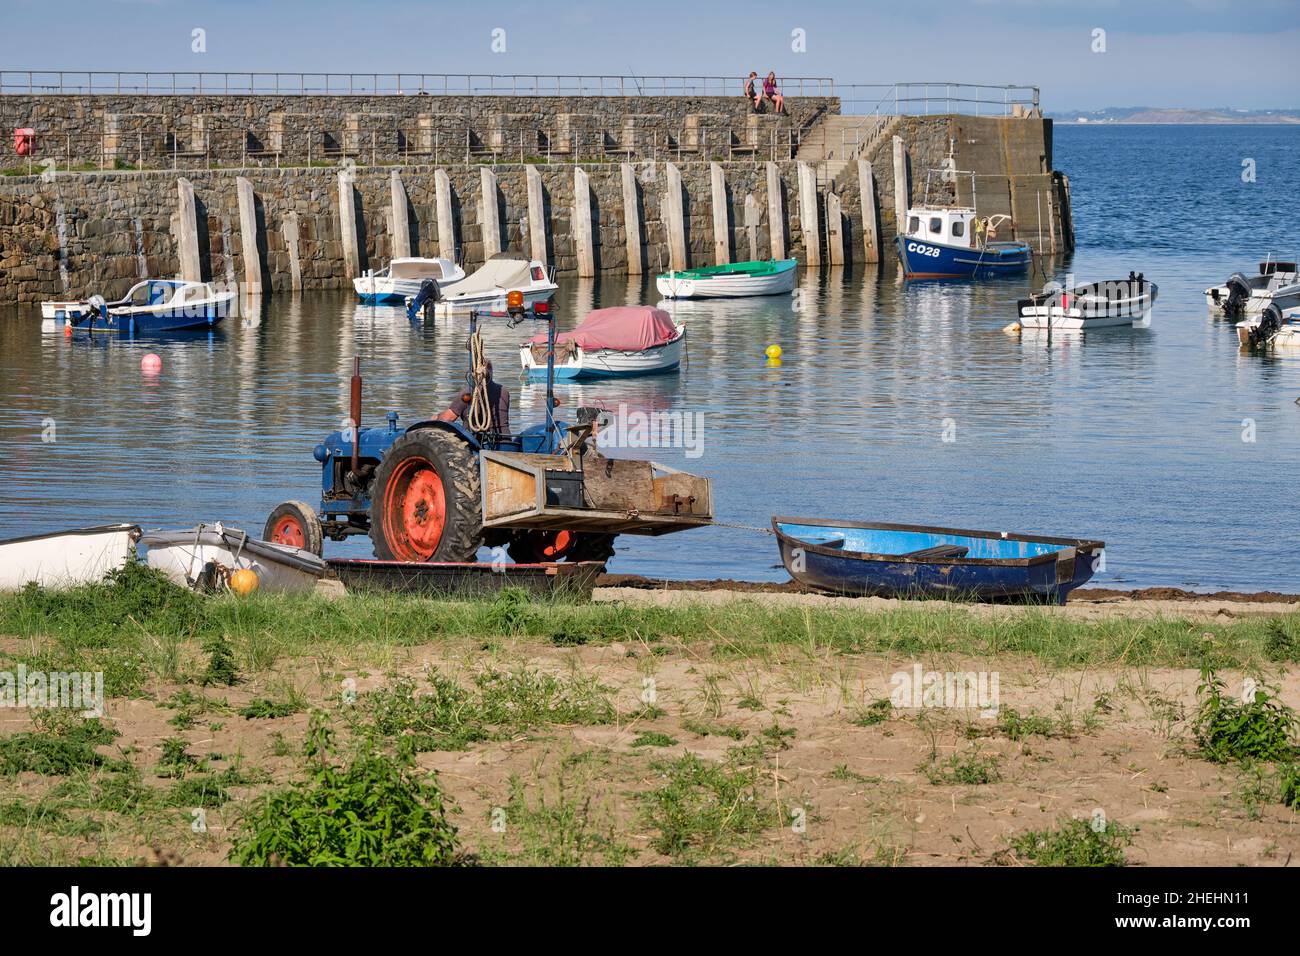 Un tracteur d'époque fait glisser un bateau à rames en bois à travers Trefor Beach, dans le nord du pays de Galles, pour être lancé Banque D'Images